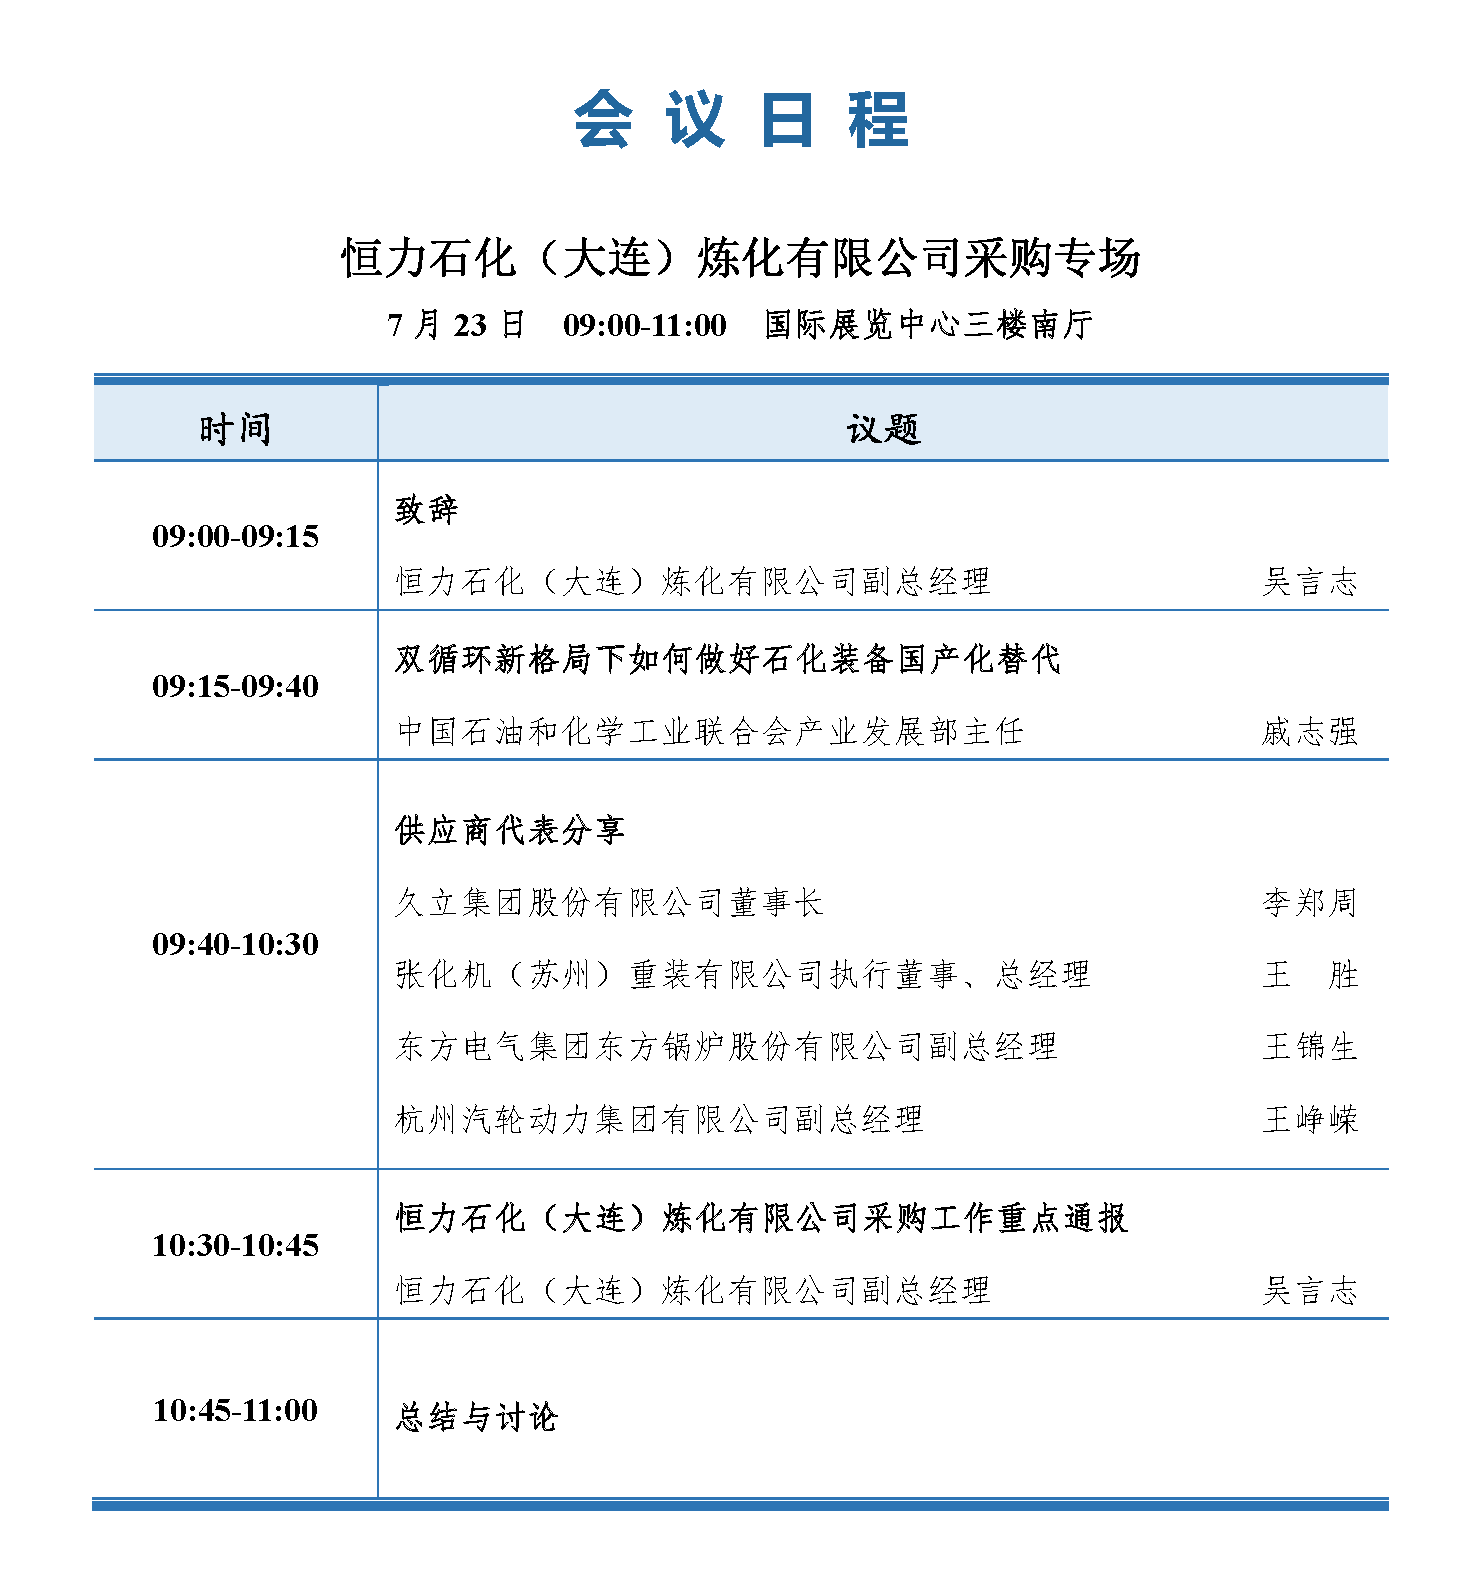 会议手册-2021中国石化行业采购大会_页面_17.png